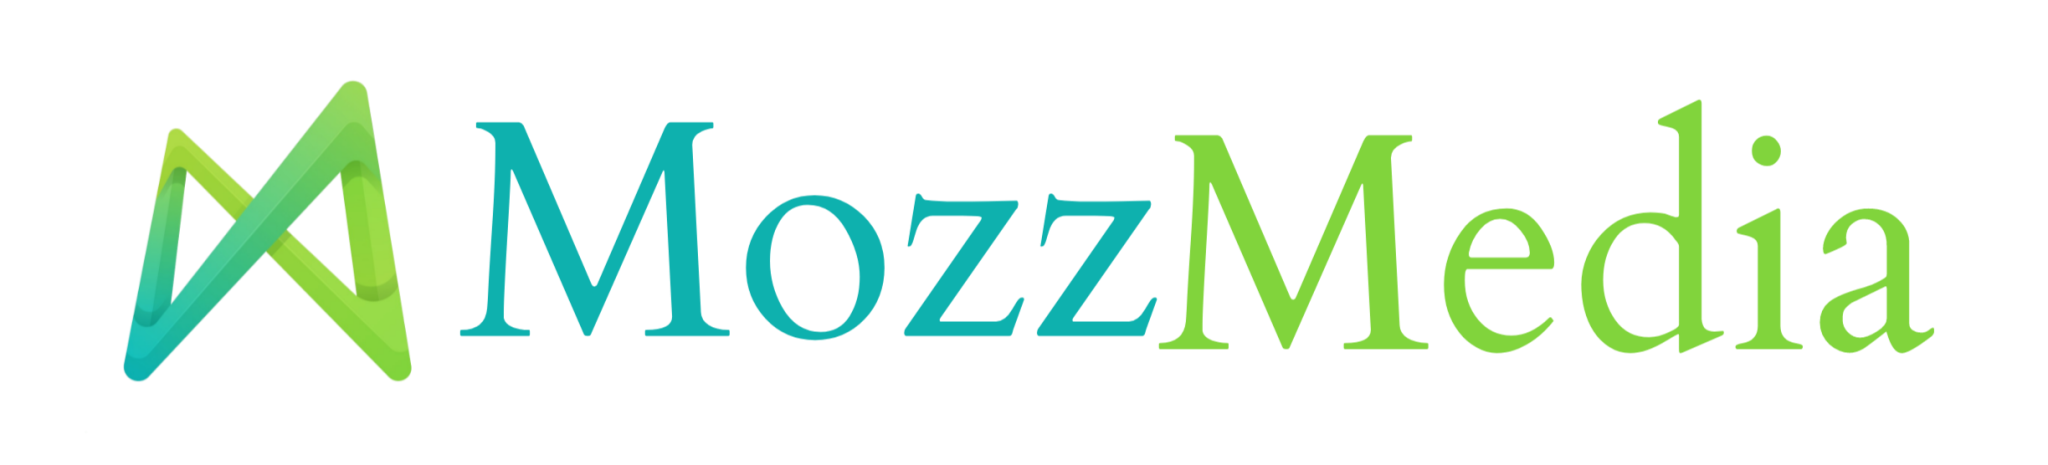 mozzmedia logo